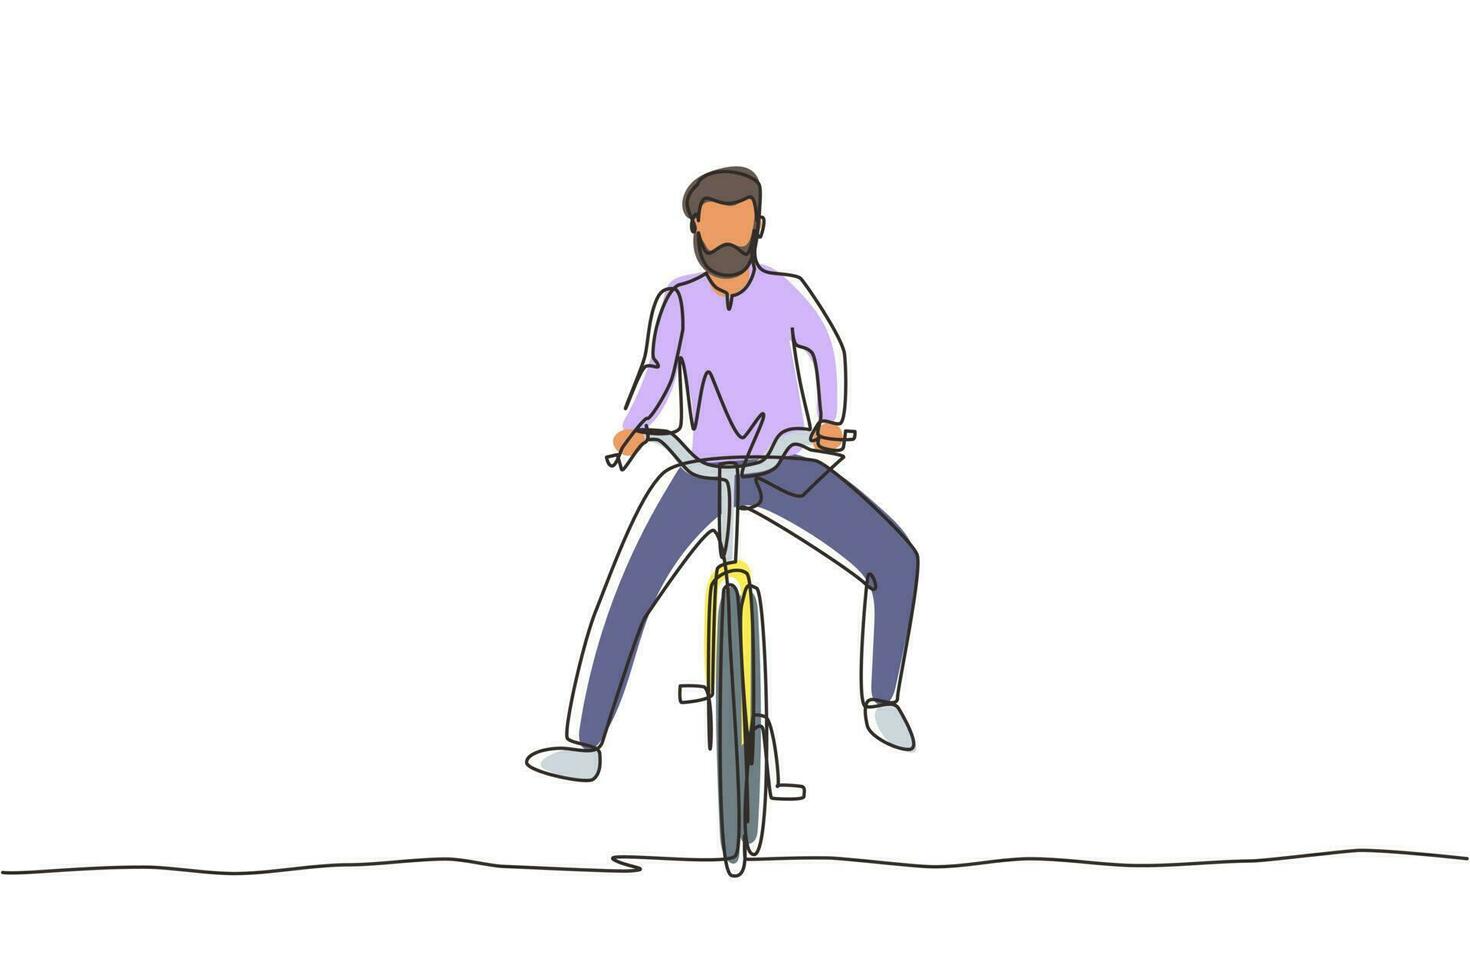 enkele doorlopende lijntekening gelukkig arabische man in casual kleding fietsten. gezonde en sportieve levensstijl. ecologisch vervoermiddel. een lijn tekenen grafisch ontwerp vectorillustratie vector